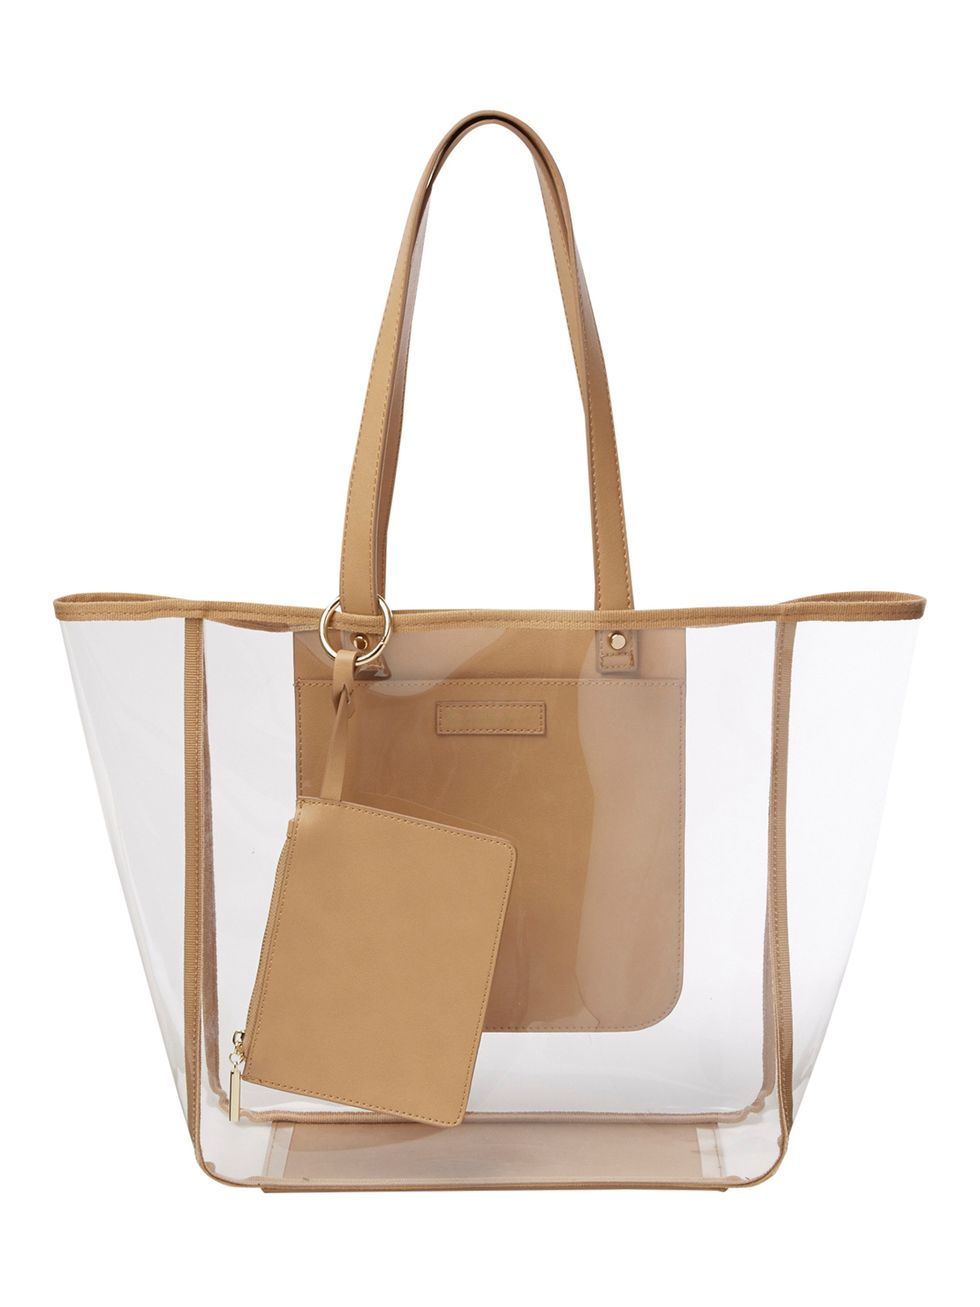 Handbag, Bag, Beige, Tote bag, Fashion accessory, Shoulder bag, Tan, Brown, Leather, Material property, 